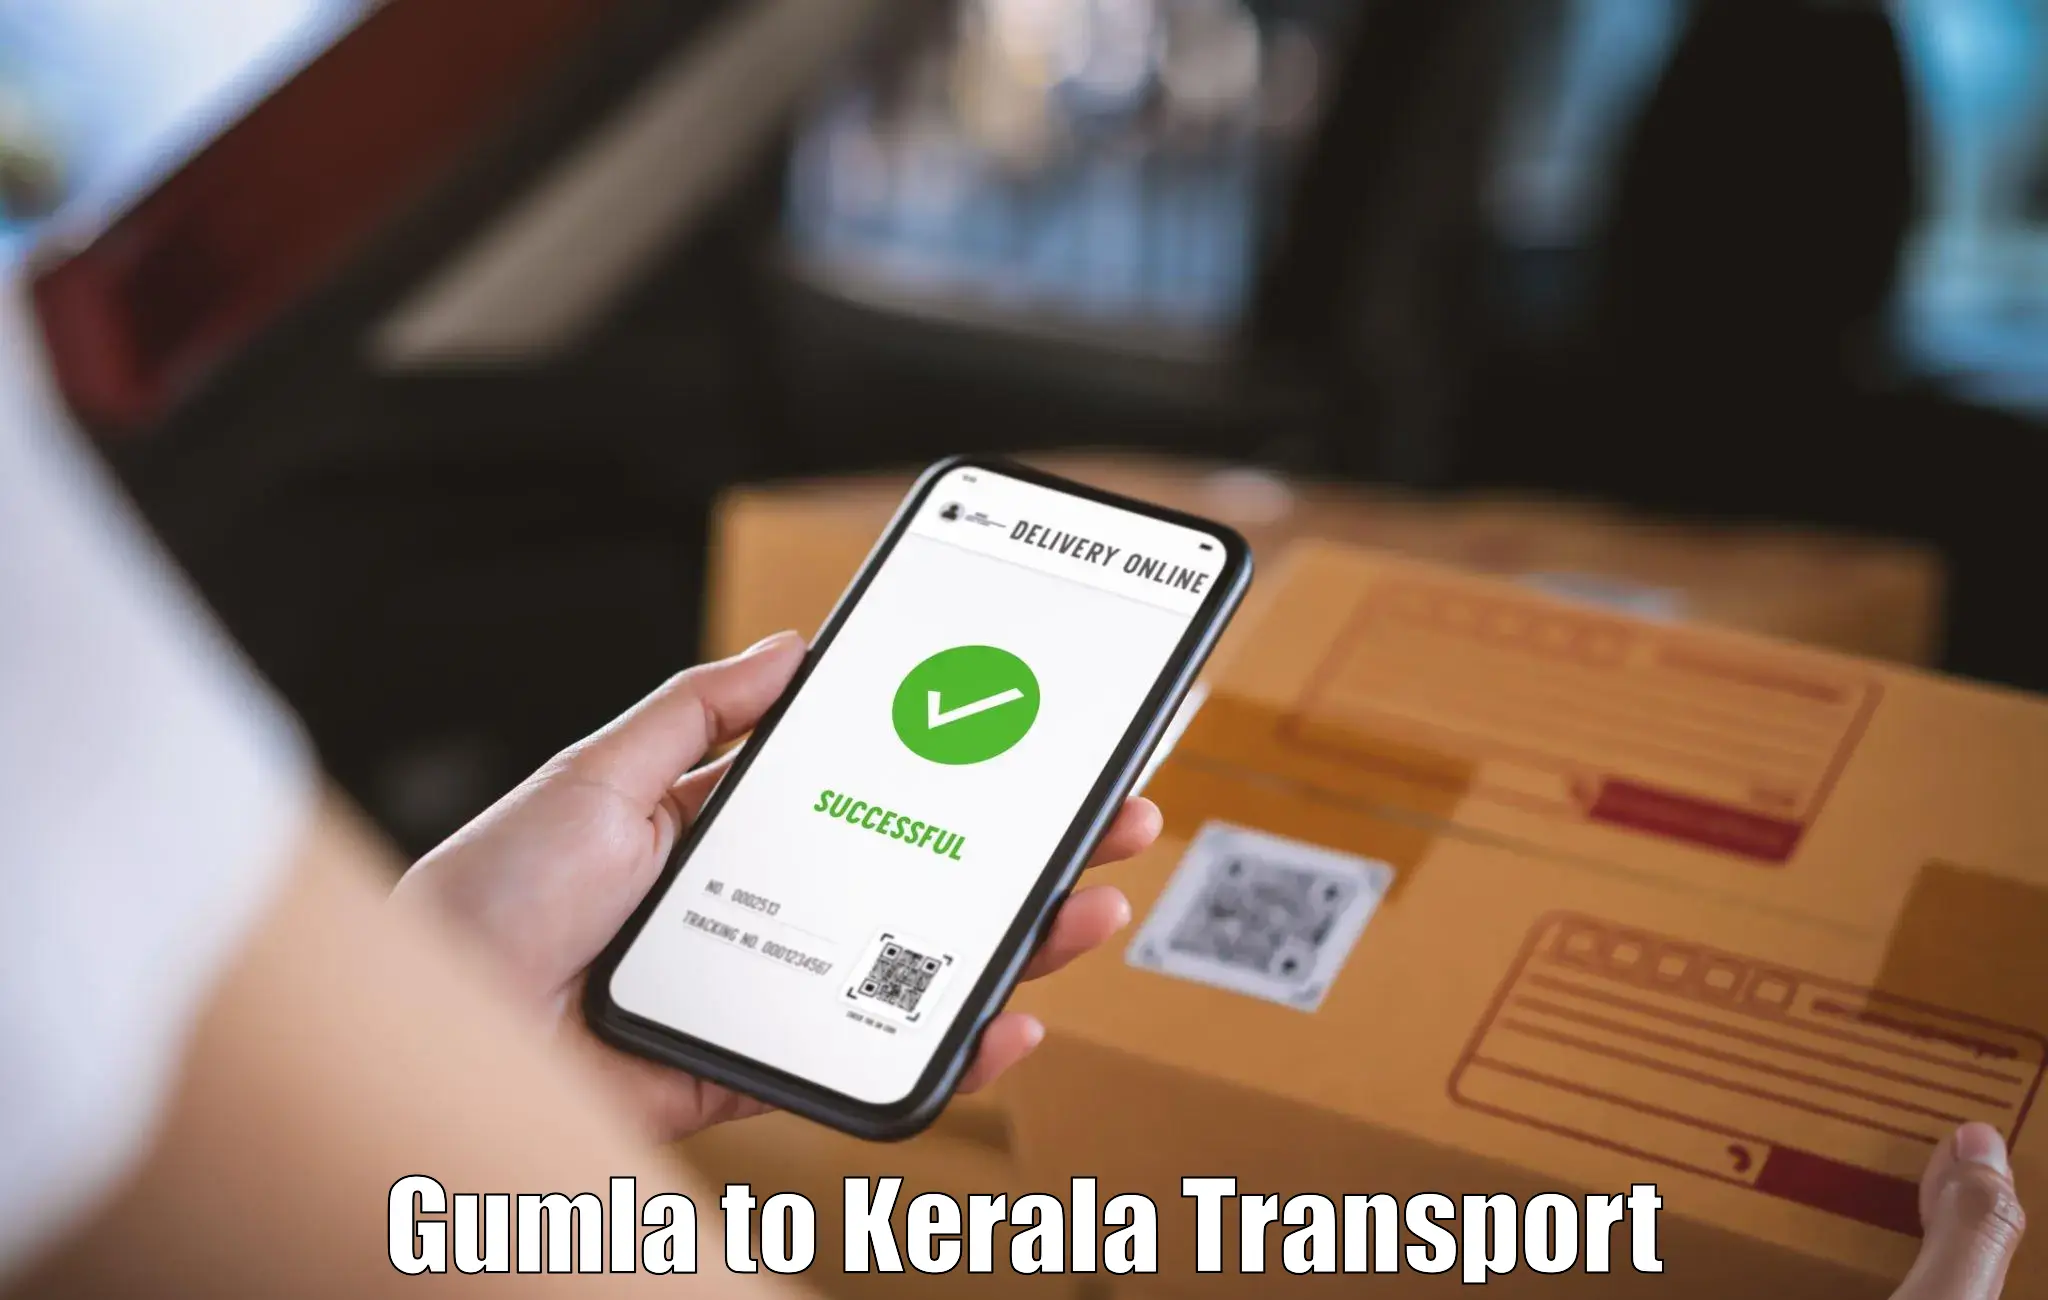 Interstate goods transport Gumla to Shoranur